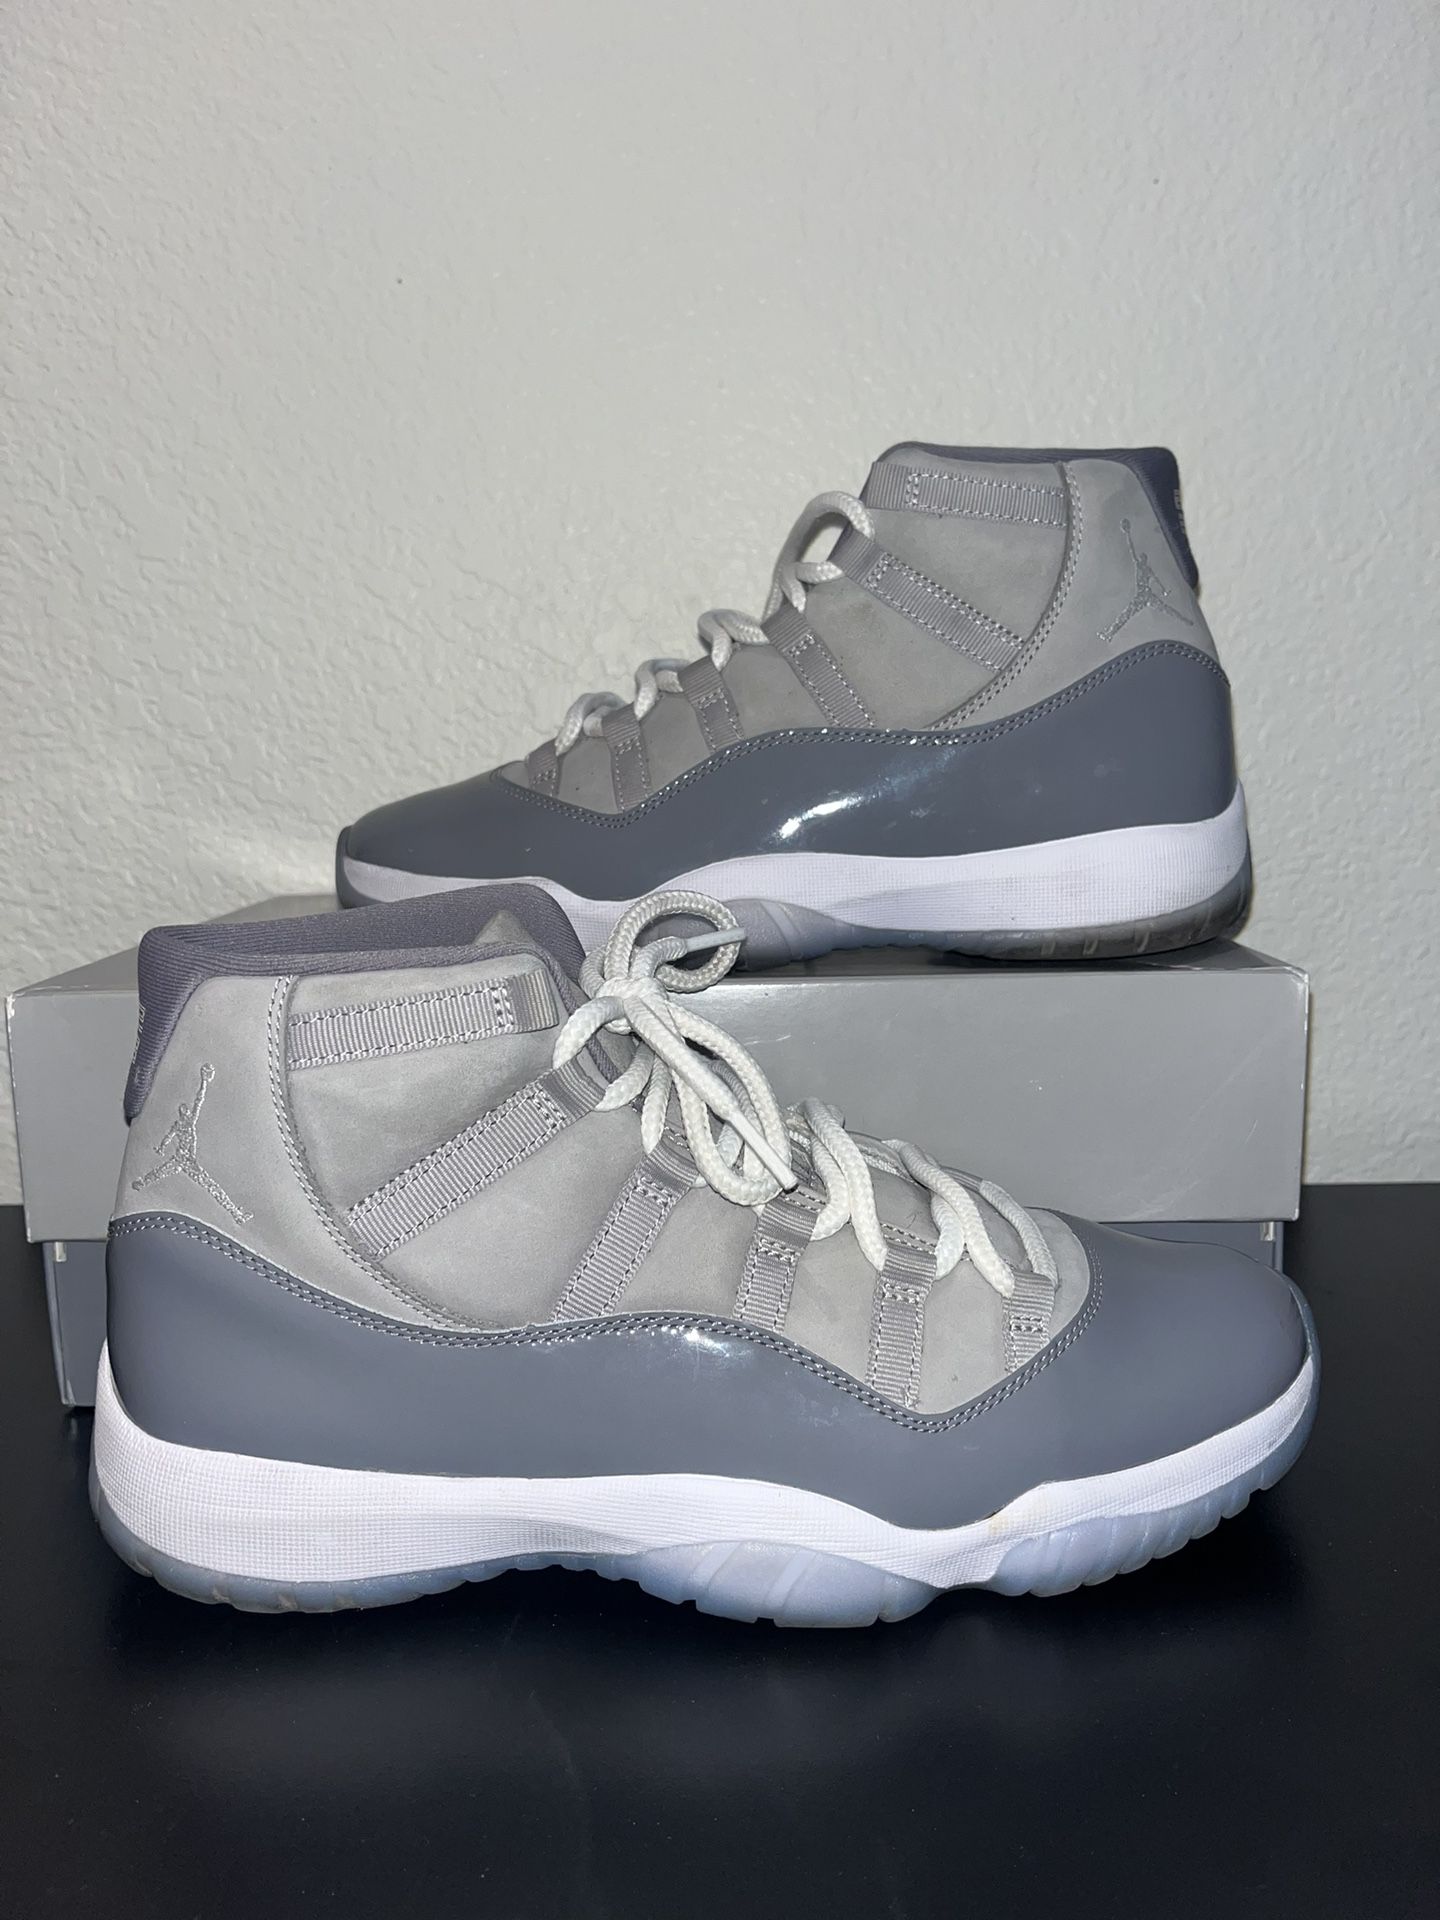 Jordan 11 cool grey 